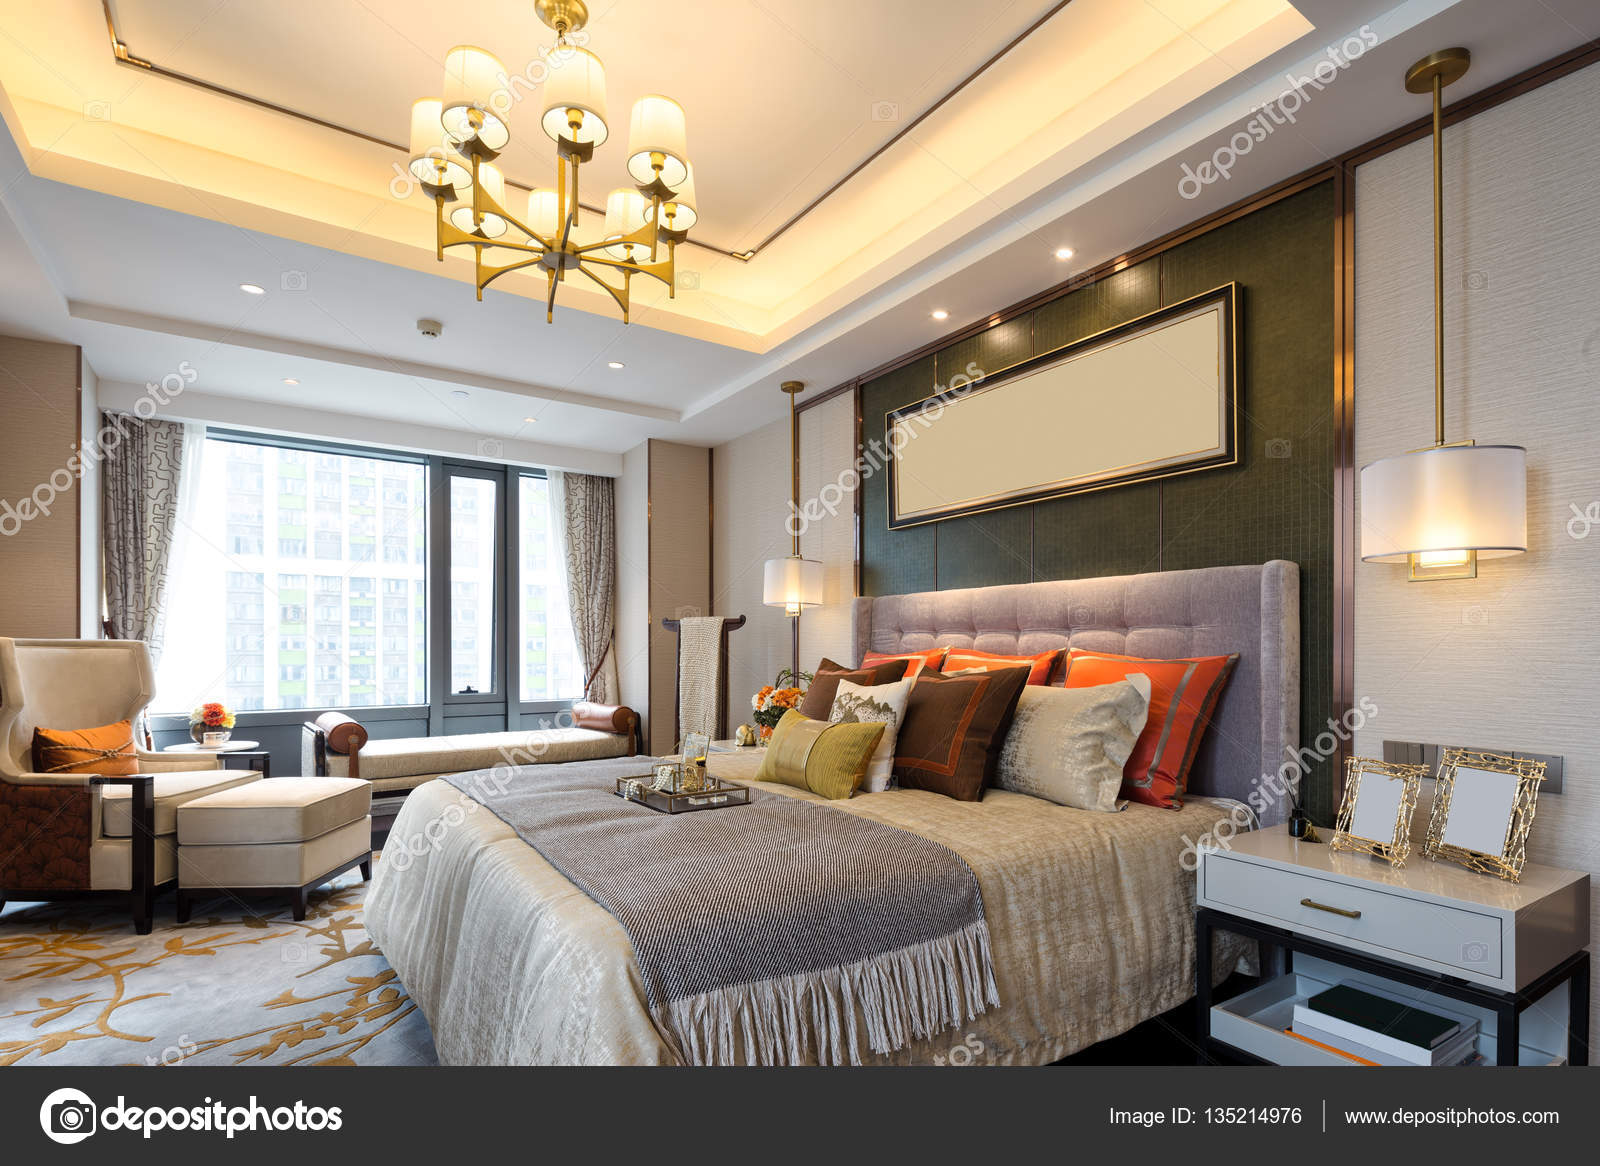 Interior de dormitorio moderno — Fotos de Stock © zhudifeng #135214976